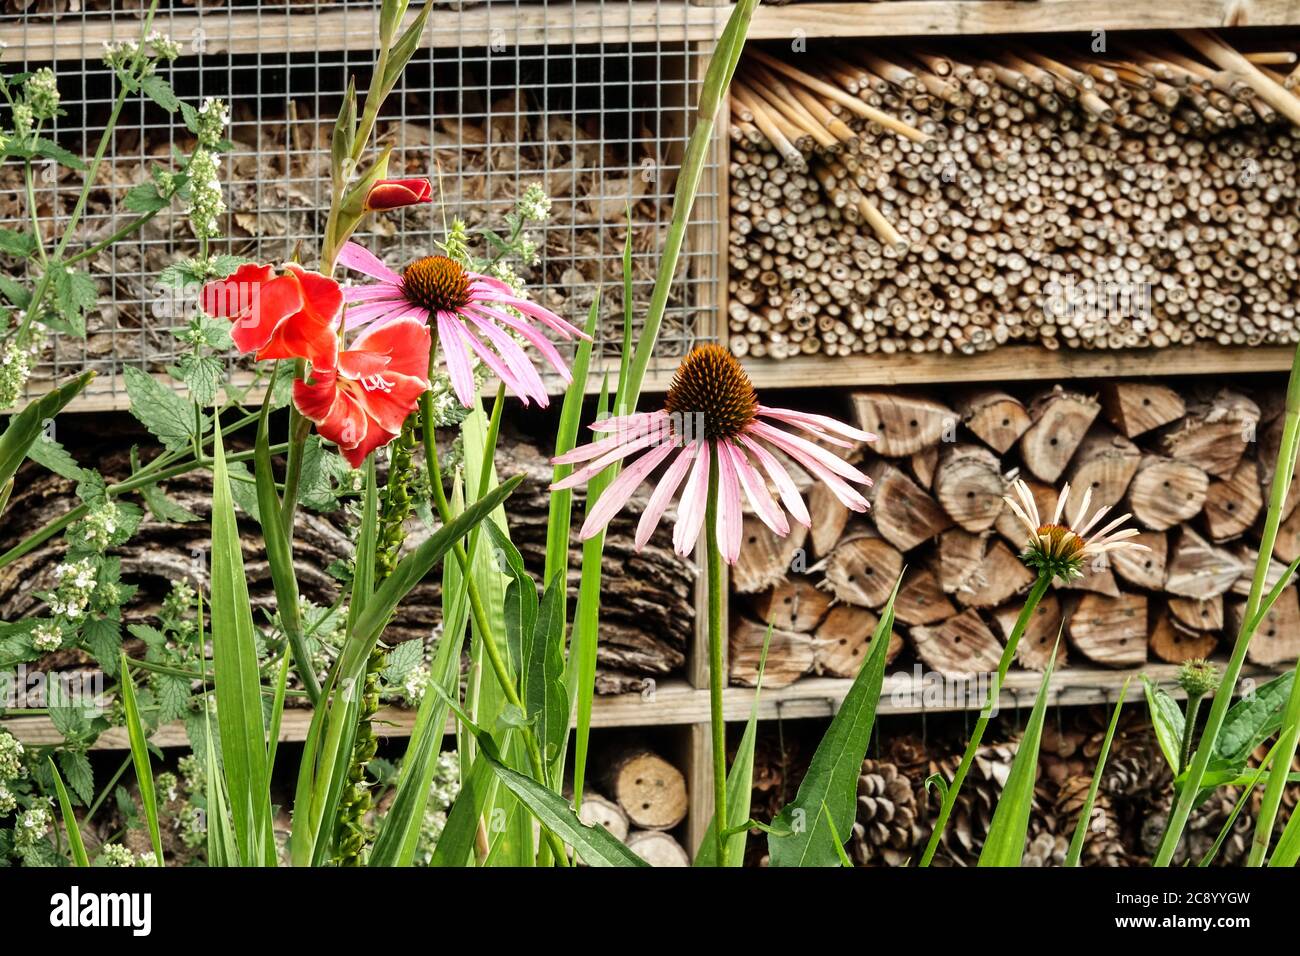 Abri anti-insectes, hôtel anti-insectes encourageant la faune, boîte en bois dans le jardin, lieu de refuge pour insectes bénéfiques fleurs de jardin d'hôtel d'insecte Banque D'Images